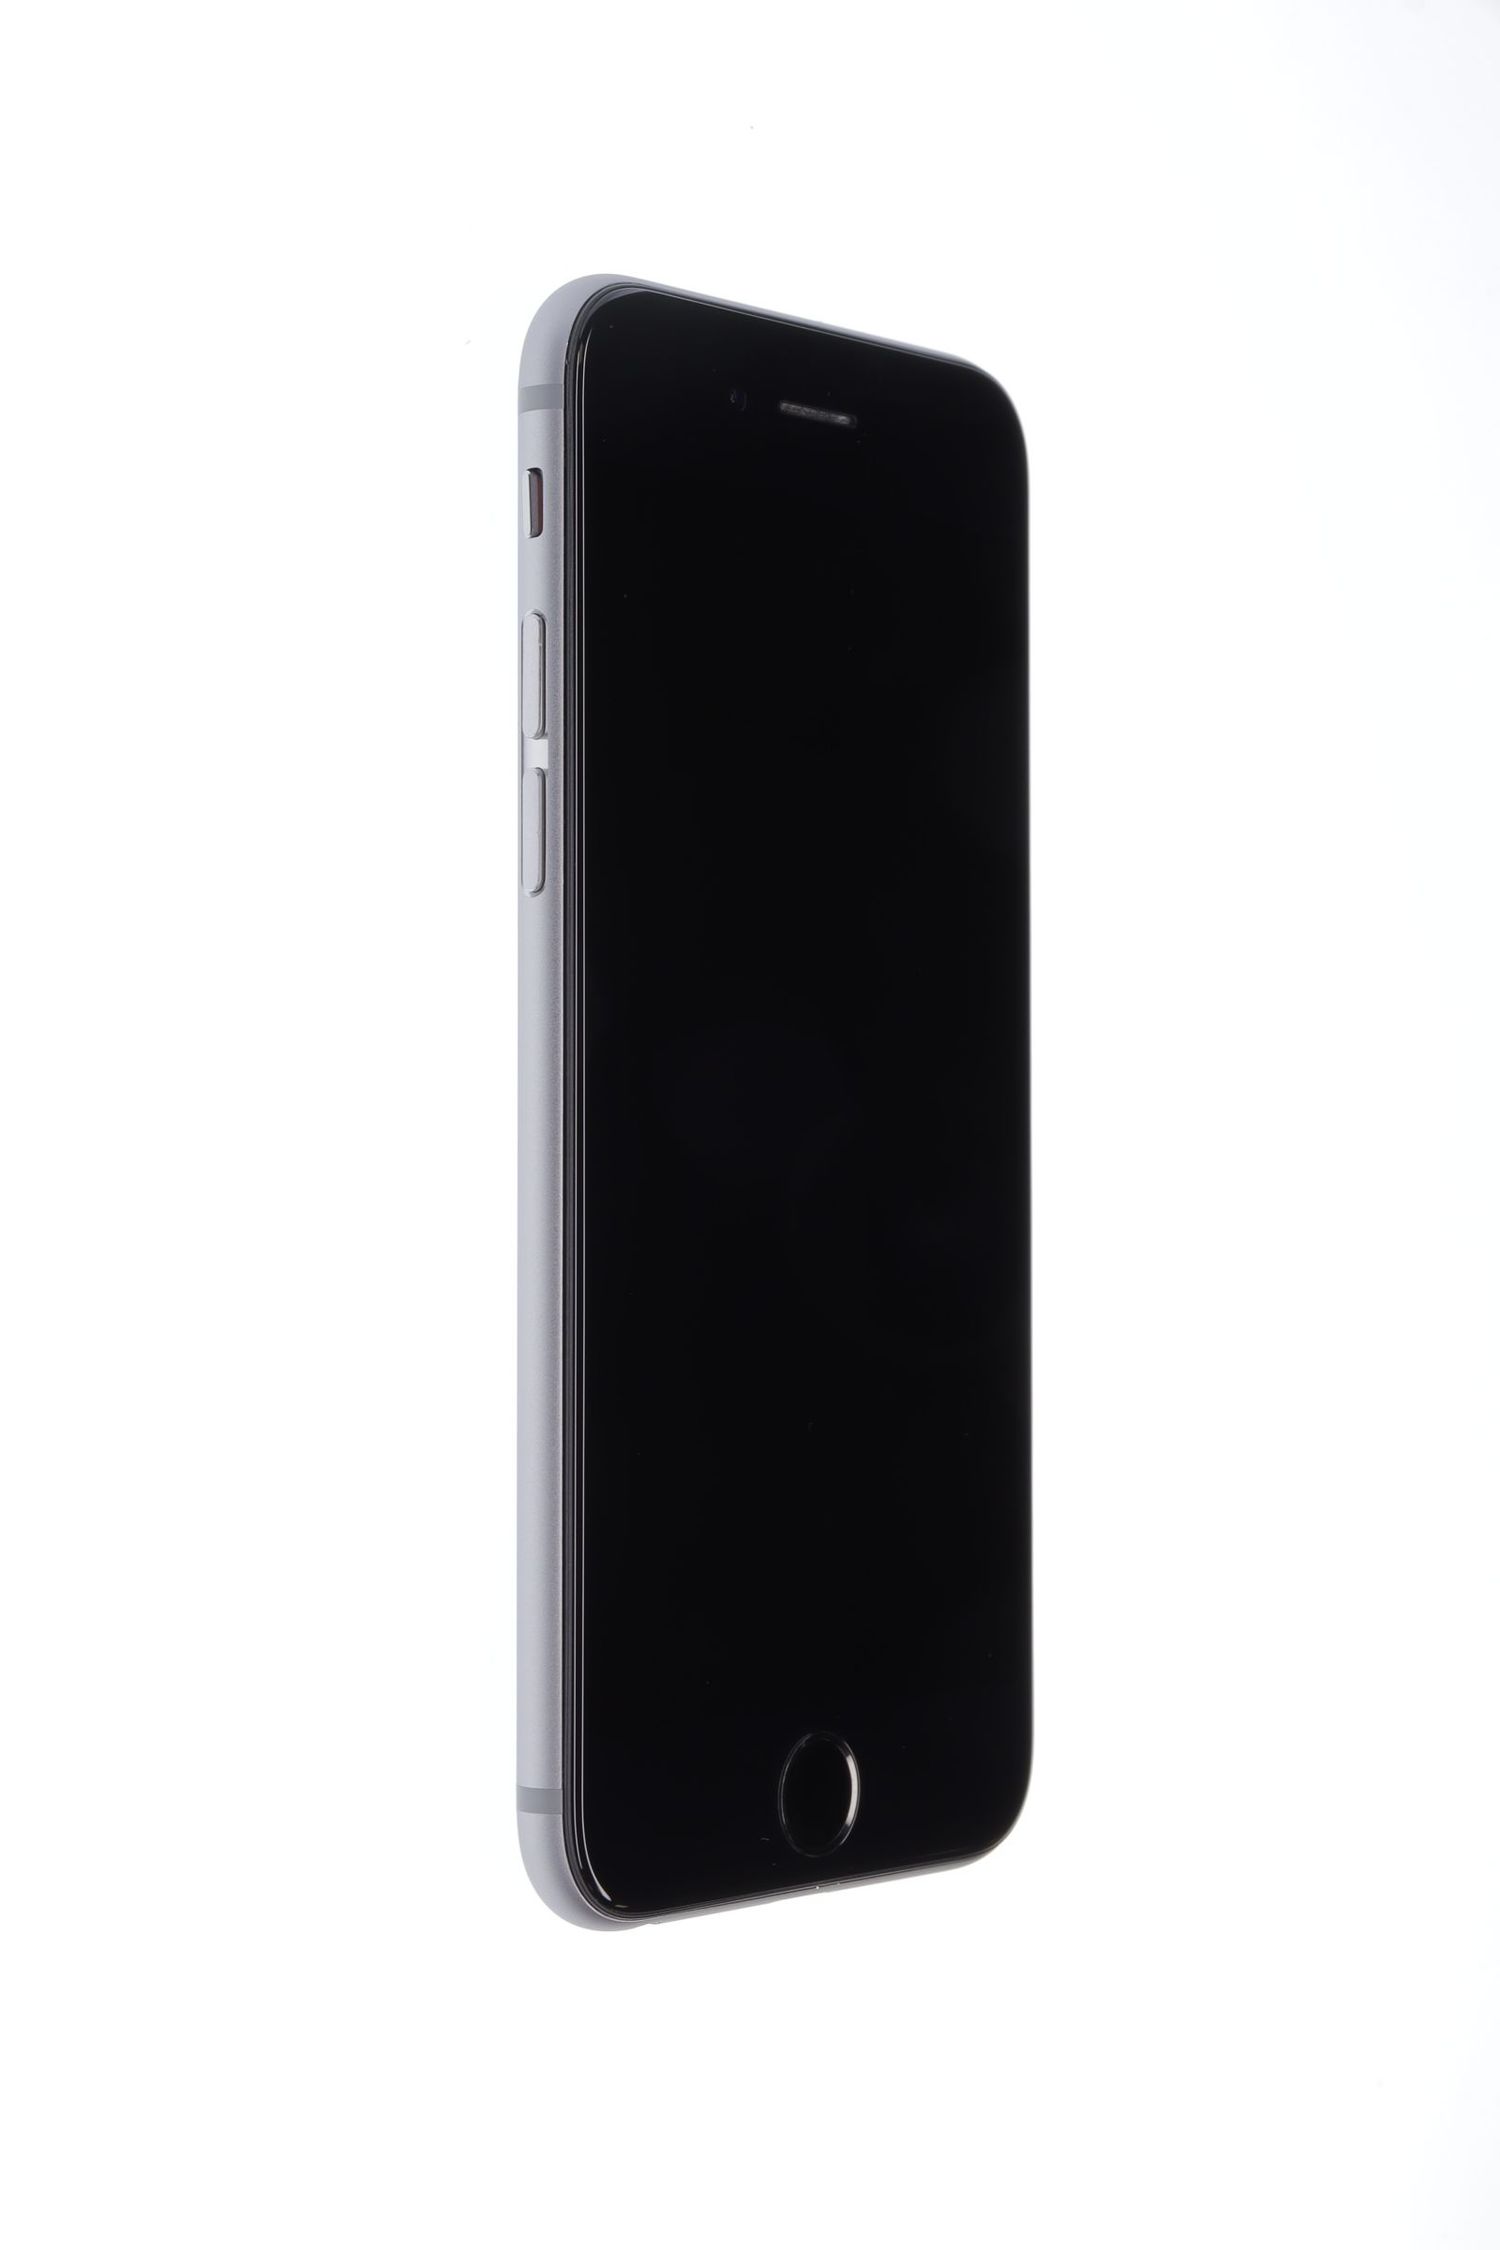 Κινητό τηλέφωνο Apple iPhone 6, Space Grey, 16 GB, Ca Nou